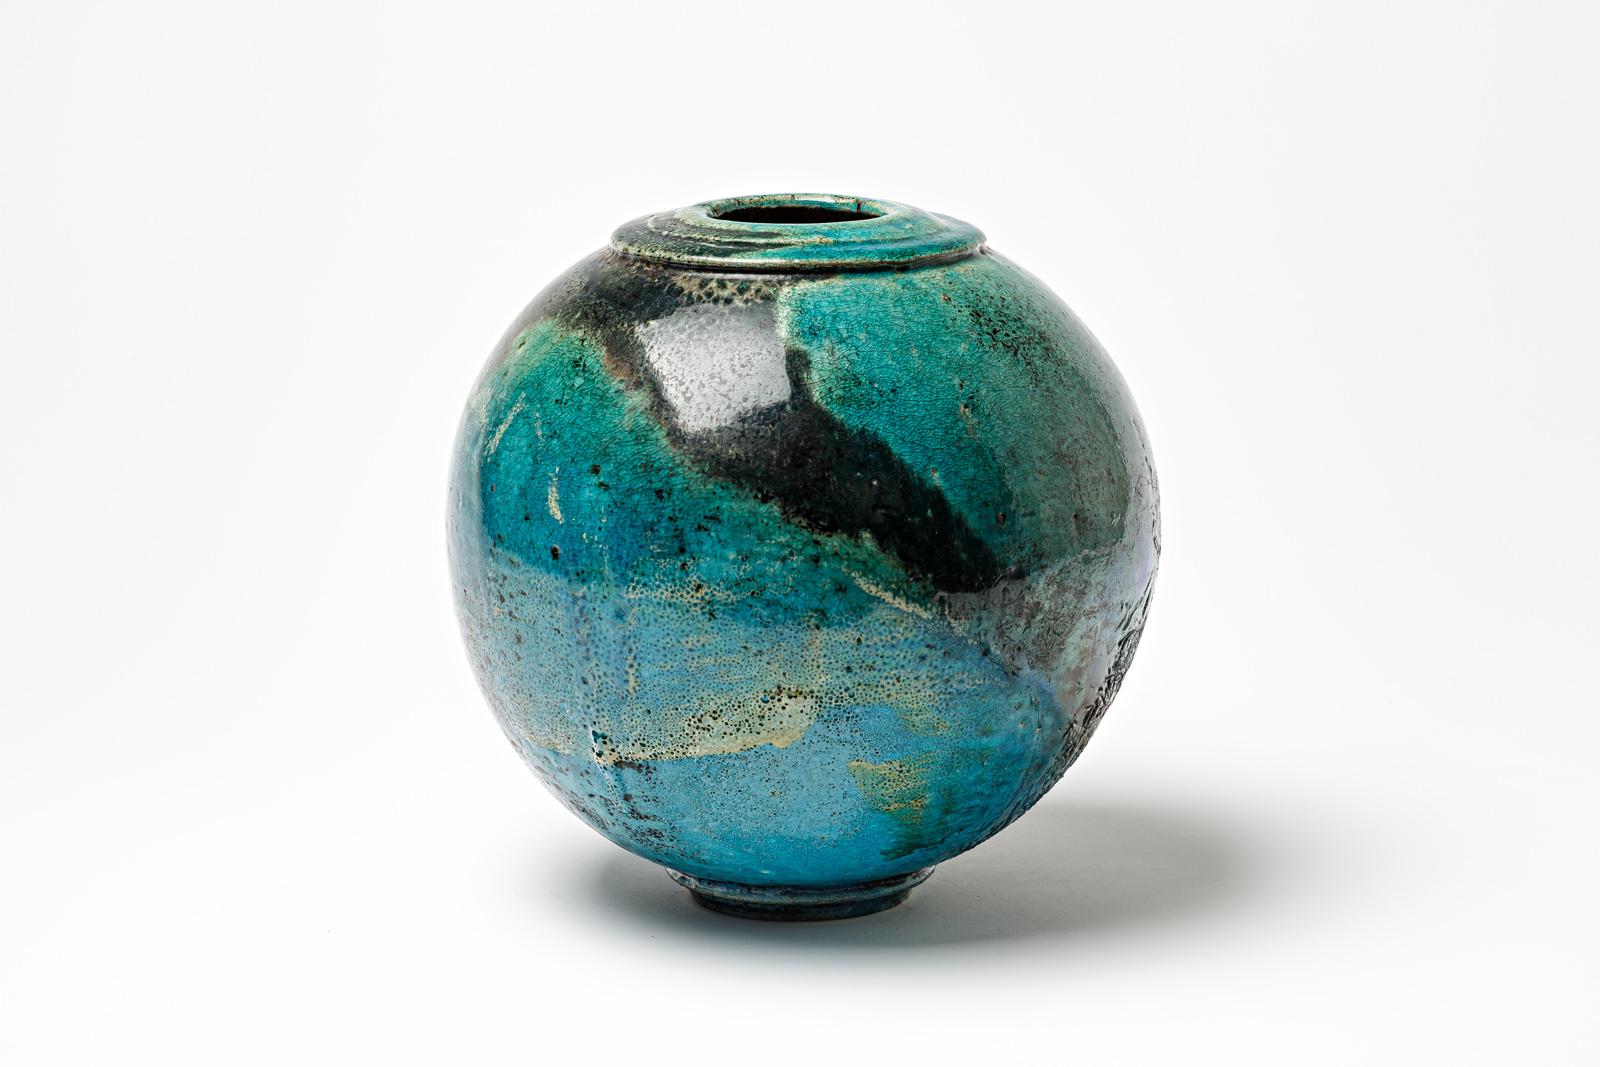 Blau/grün und schwarz glasierte Keramik-Kugelvase von Gisèle Buthod Garçon. 
Raku gebrannt. Künstlermonogramm unter dem Sockel. Vers 1980-1990.
H : 9,8' x 9,1' Zoll.
